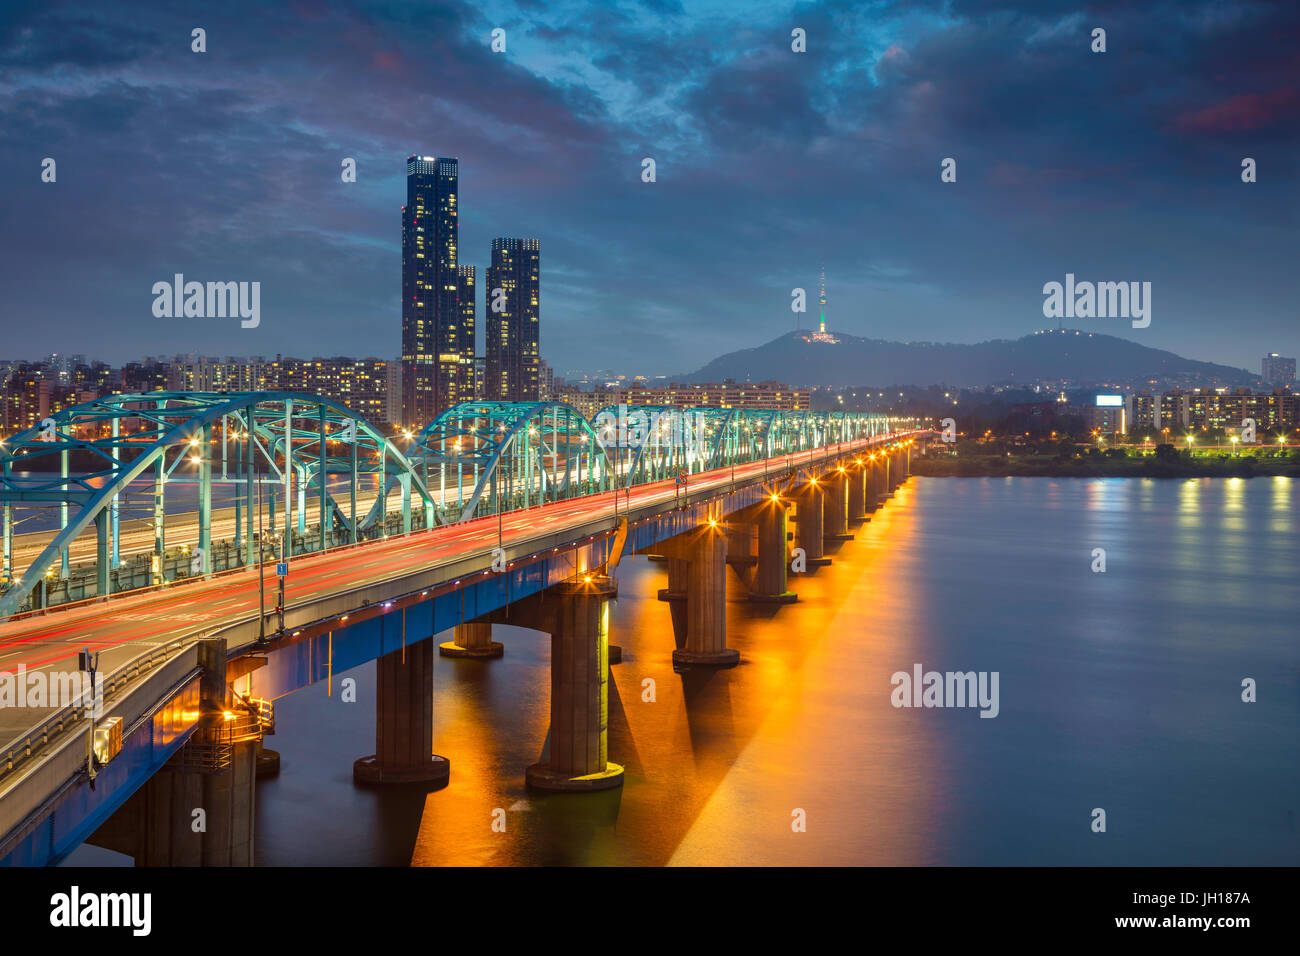 Séoul. Image de Séoul, Corée du Sud avec pont Dongjak et Hangang river au crépuscule. Banque D'Images